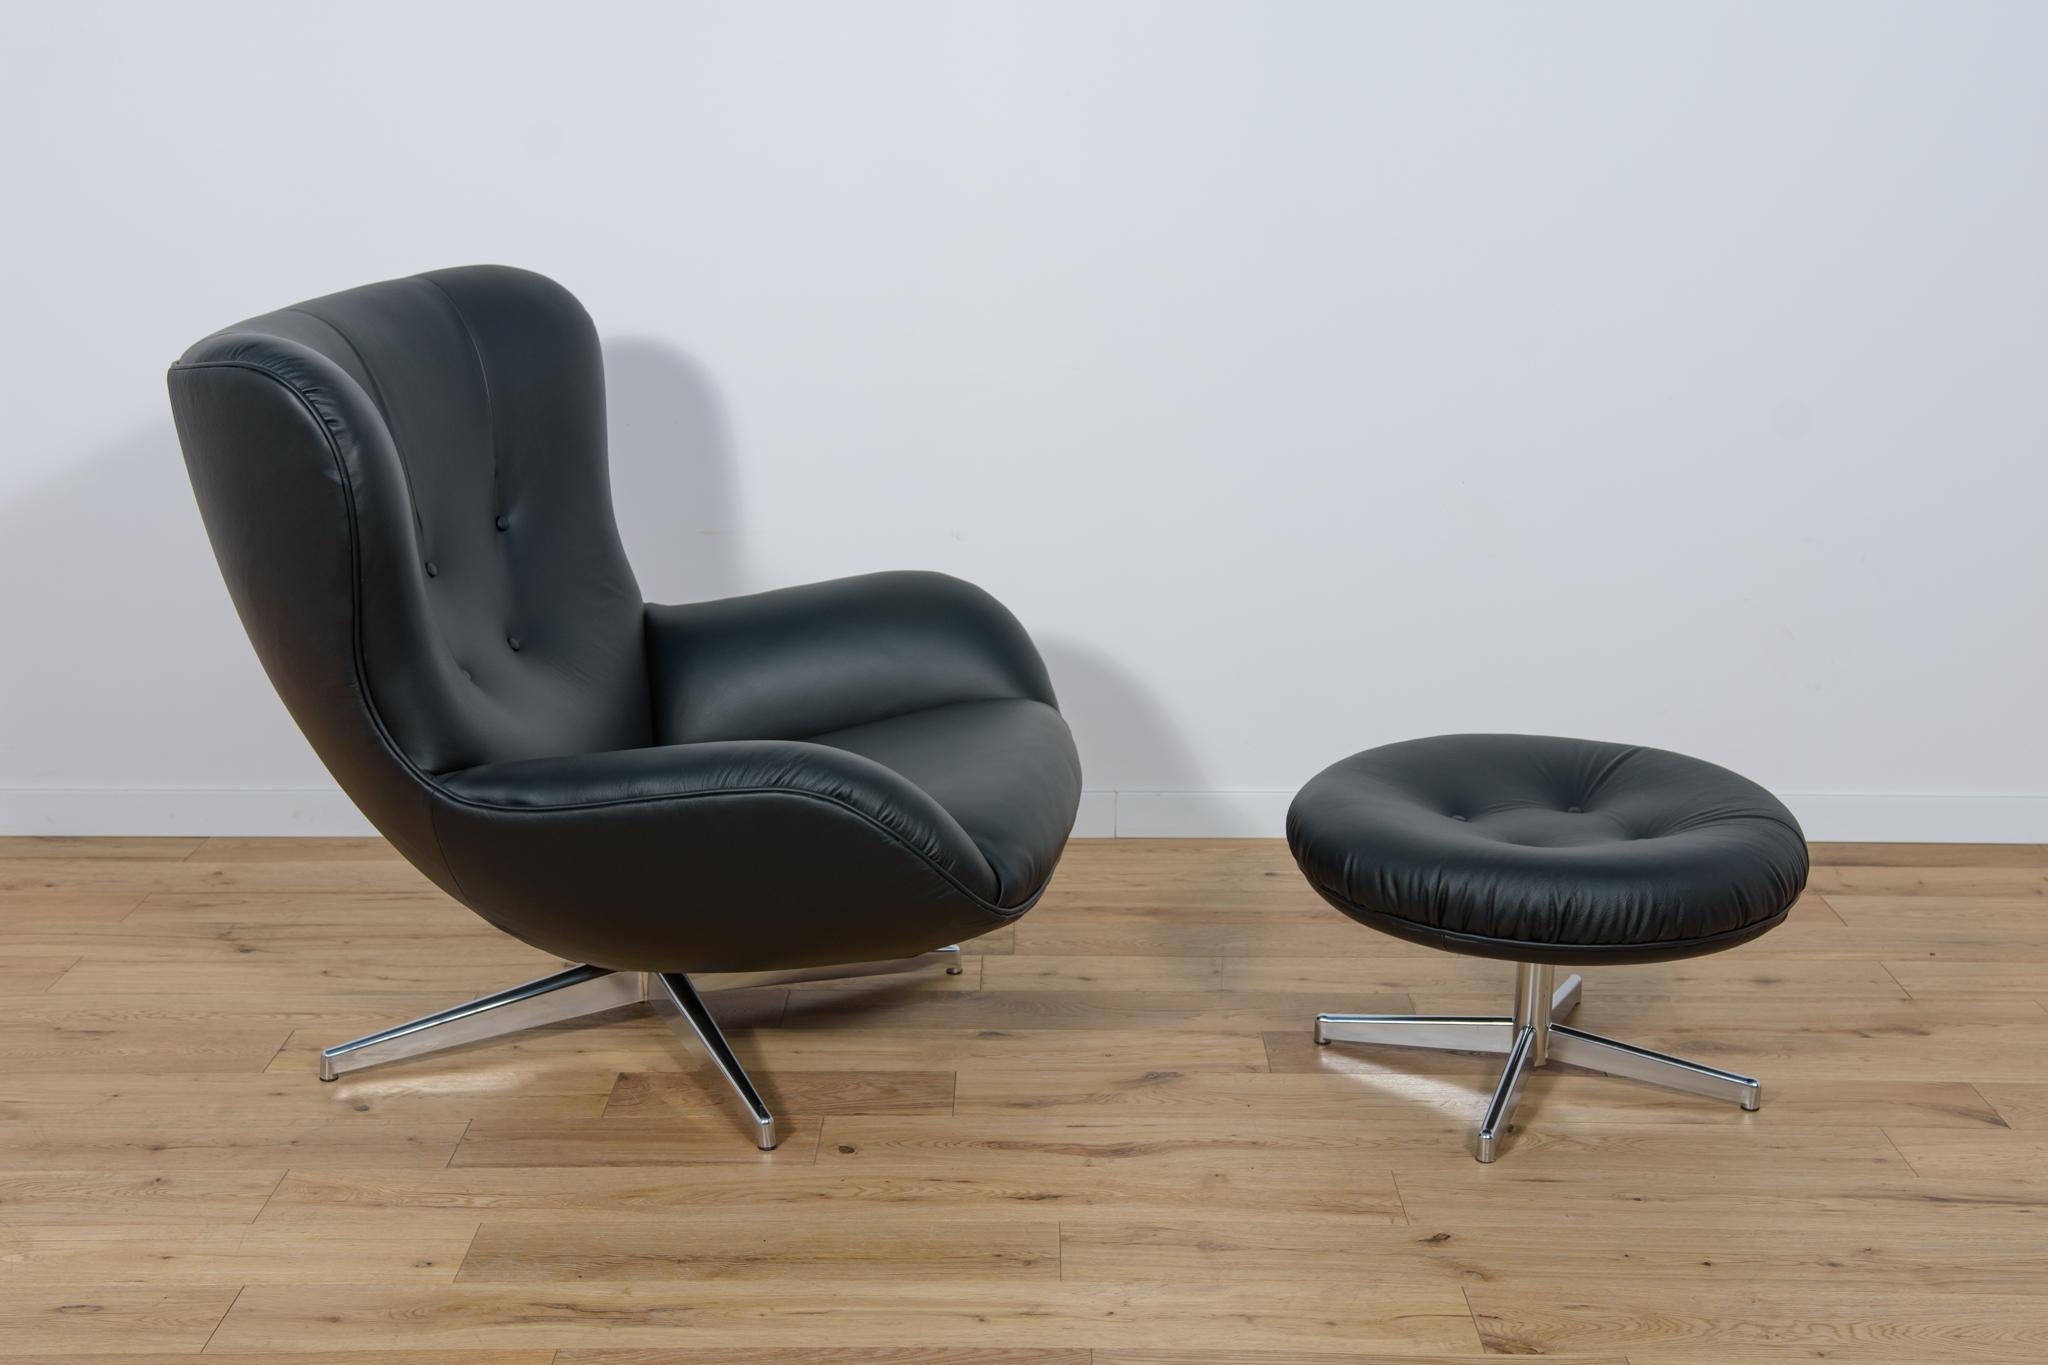 Modell ML 214 Lounge Chair mit Ottomane, entworfen von Illum Wikkelsø für Mikael Laursen in Dänemark in den 1960er Jahren. Organisch geformter Sessel aus schwarzem Leder. Ein Drehsessel mit mehreren Kontrasten. Erstens: Kontraste bei den MATERIALEN.